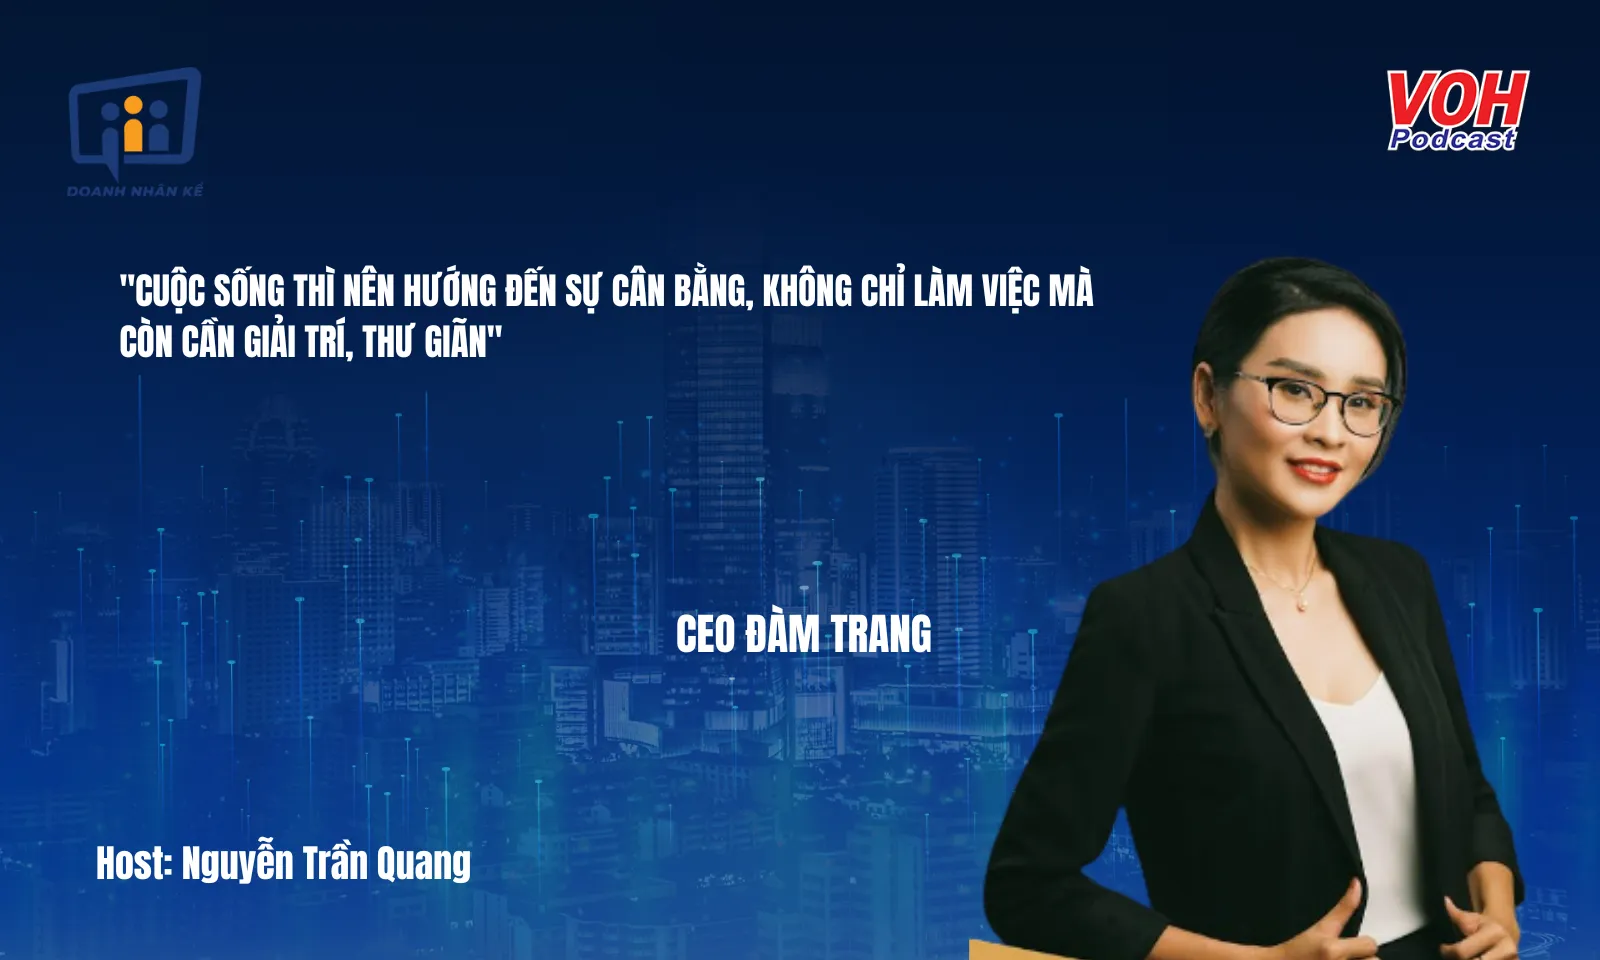 CEO Đàm Trang: Edutainment chìa khóa chiến lược doanh nghiệp hiện đại | DNK #112